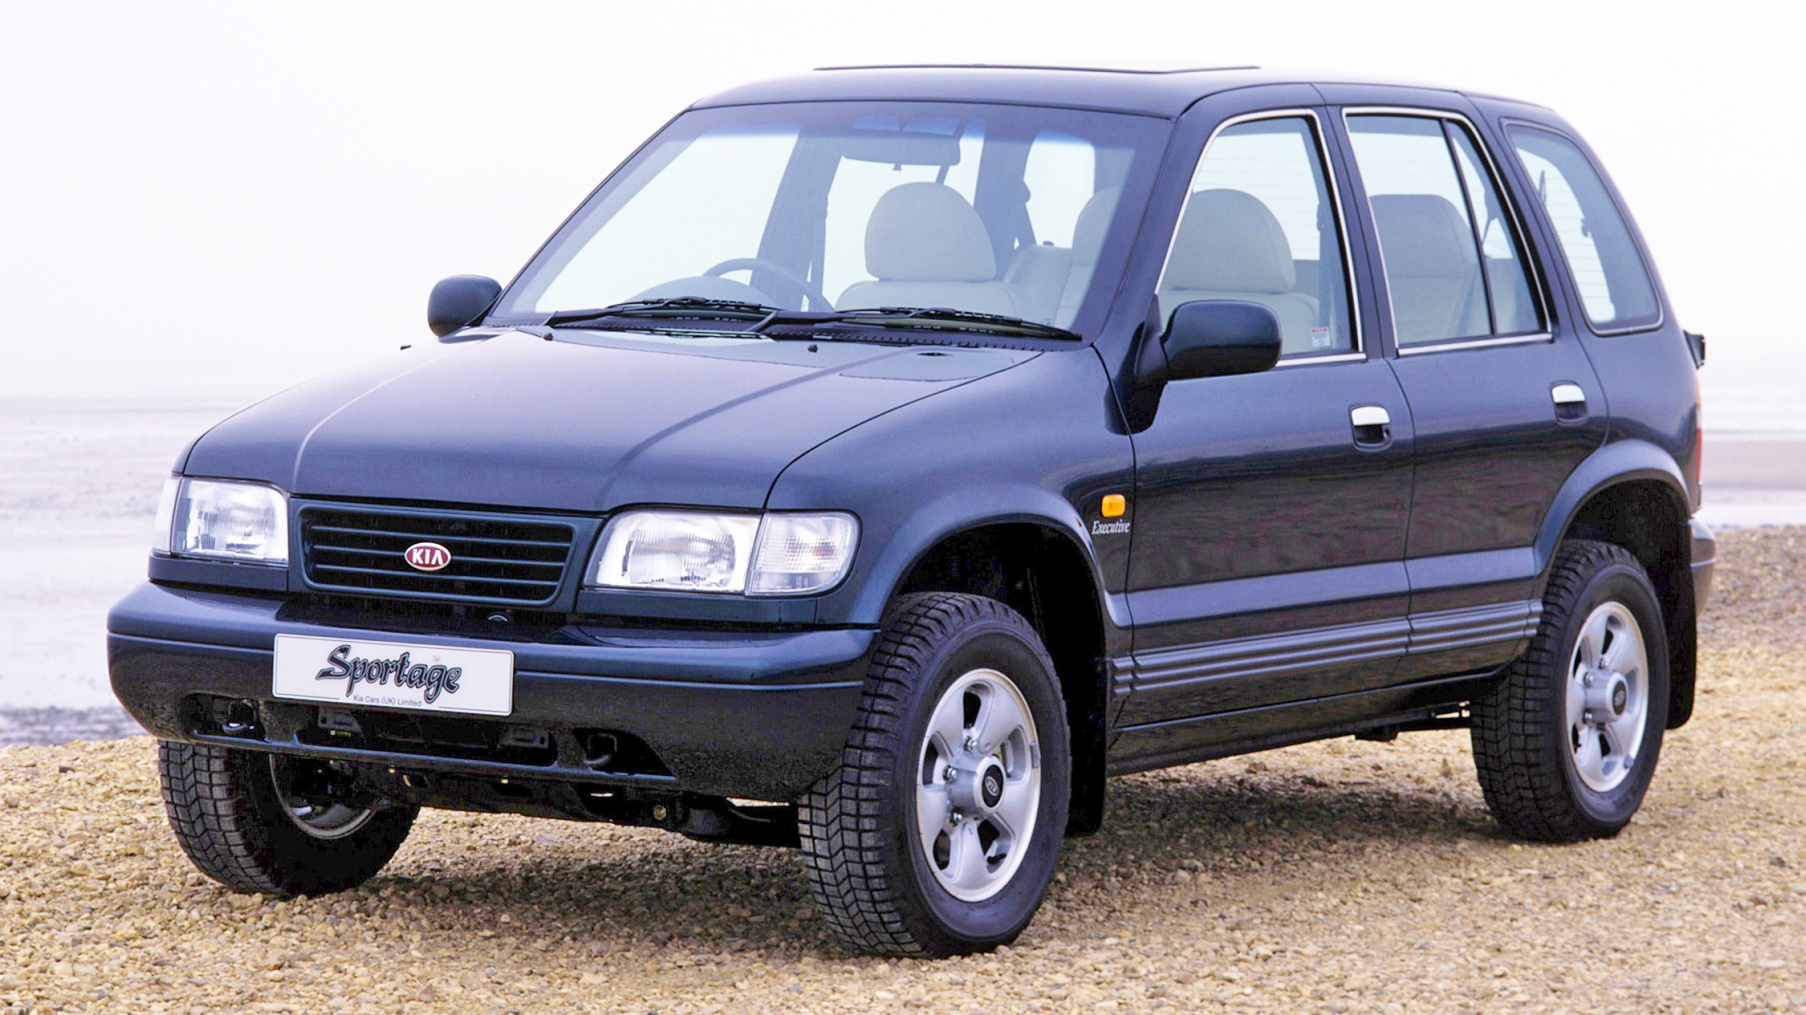 Kia Sportage 1993 SUV